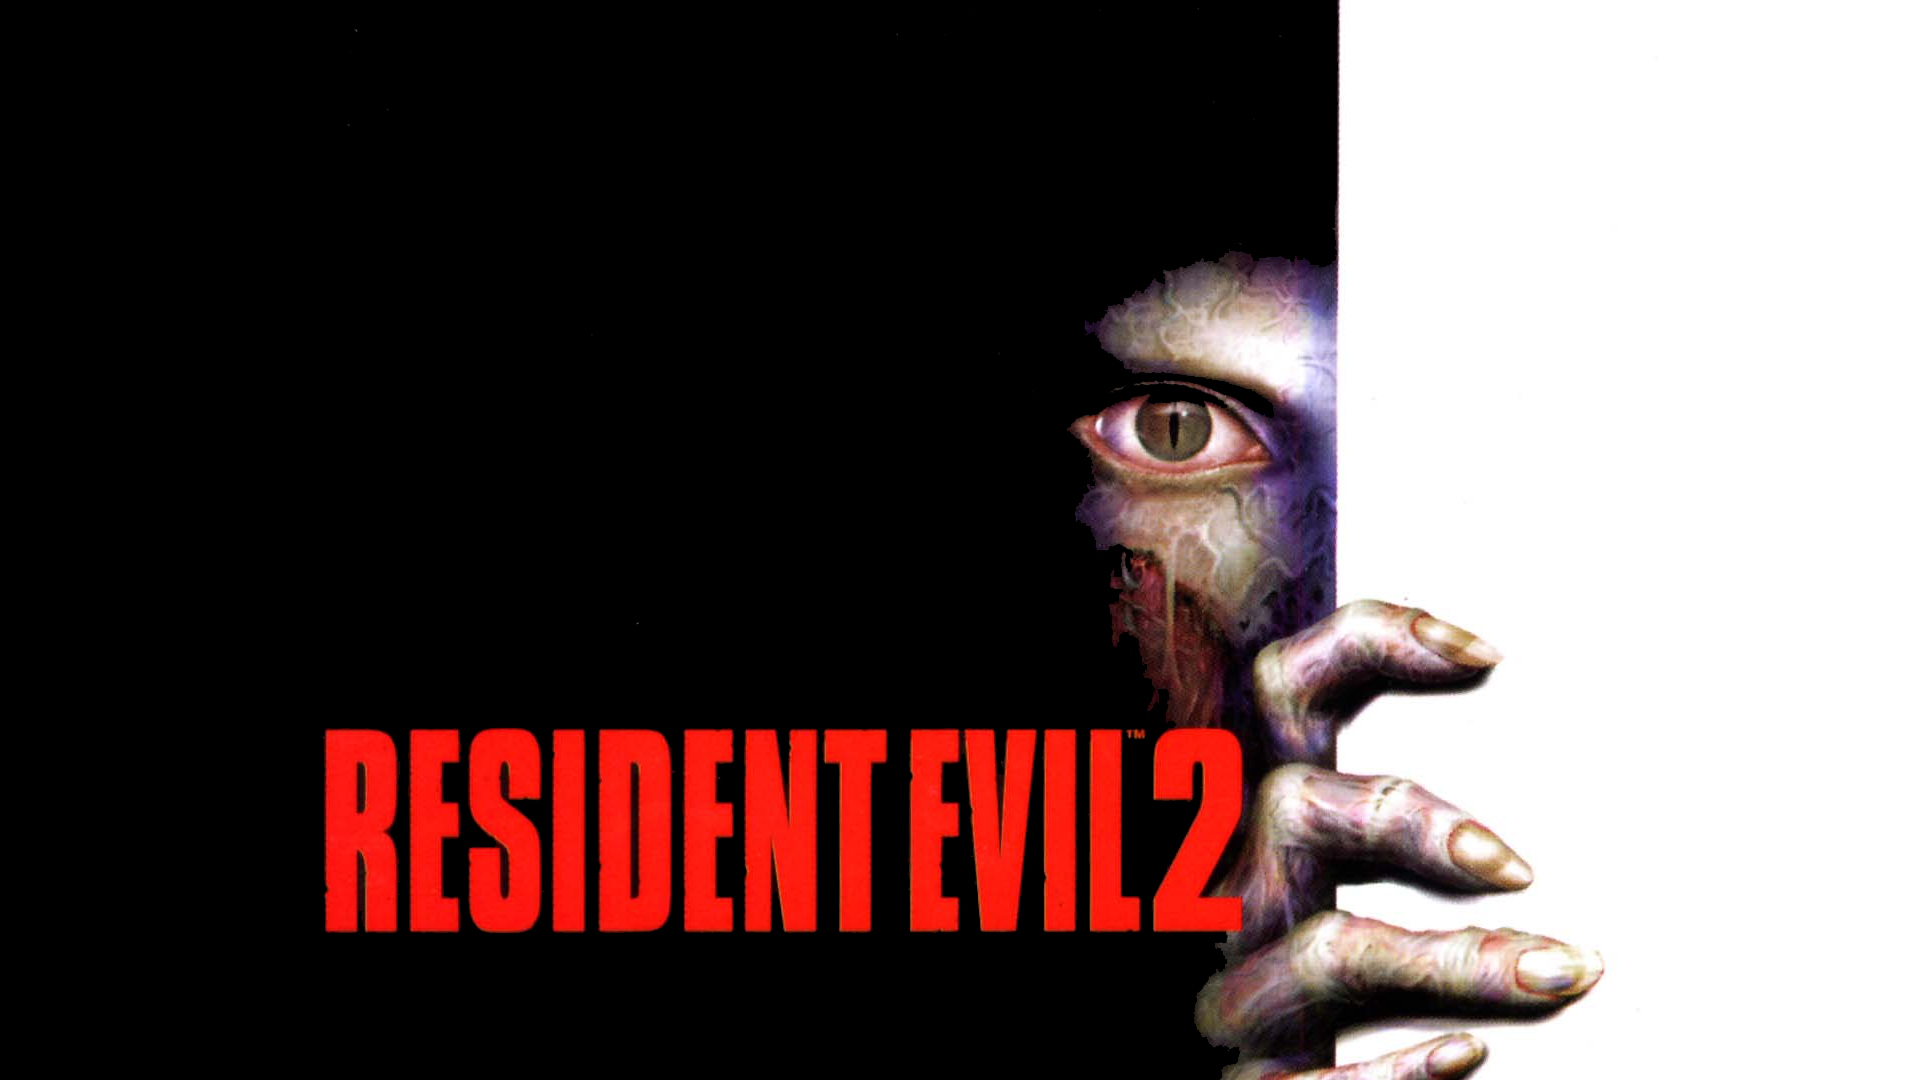 1001 Videojuegos que debes jugar: Resident Evil 2 2